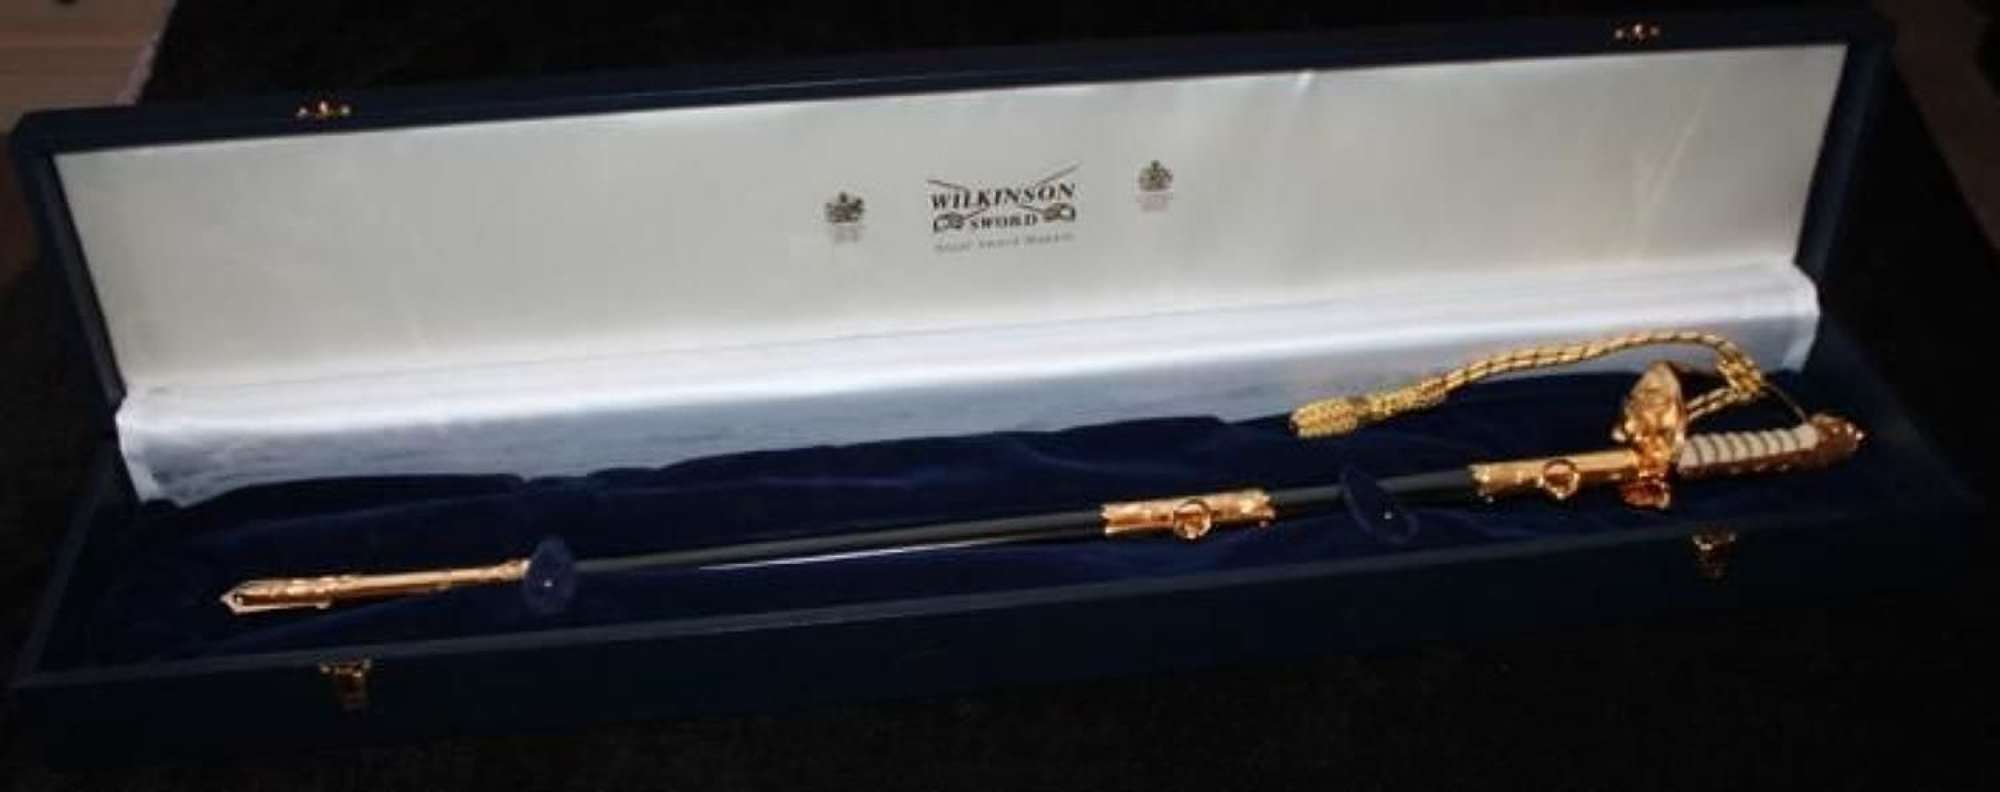 Cased Elizabeth II Royal Naval Officers Sword